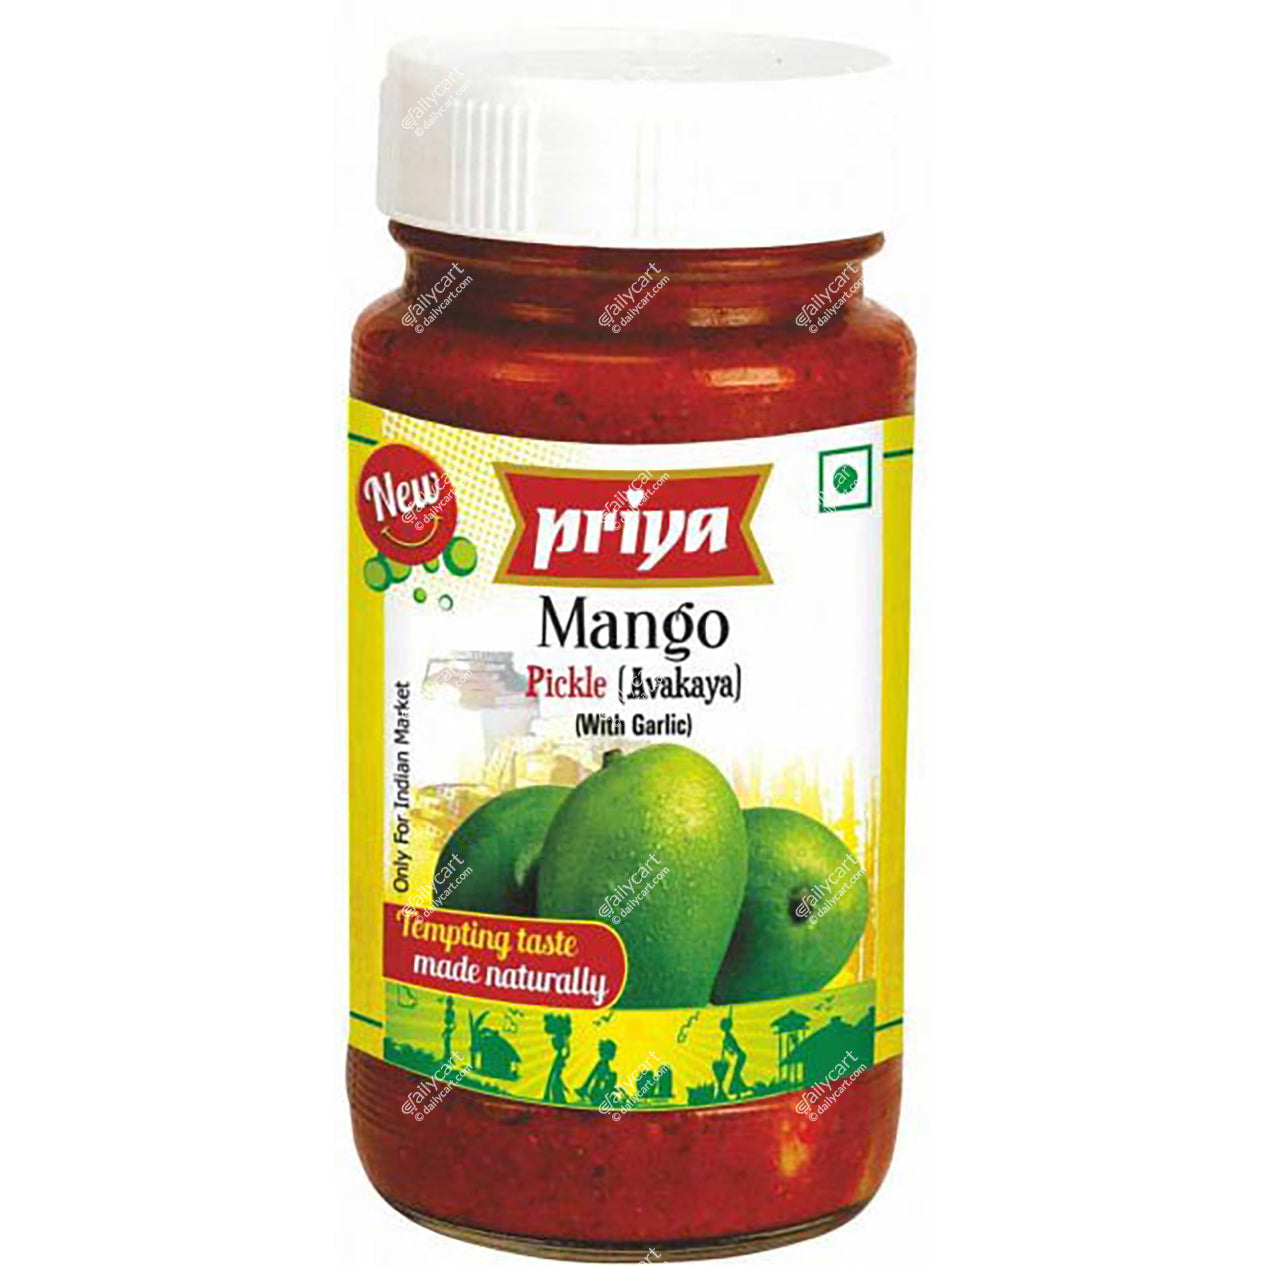 Priya Mango Pickle (Avakaya) With Garlic, 300 g